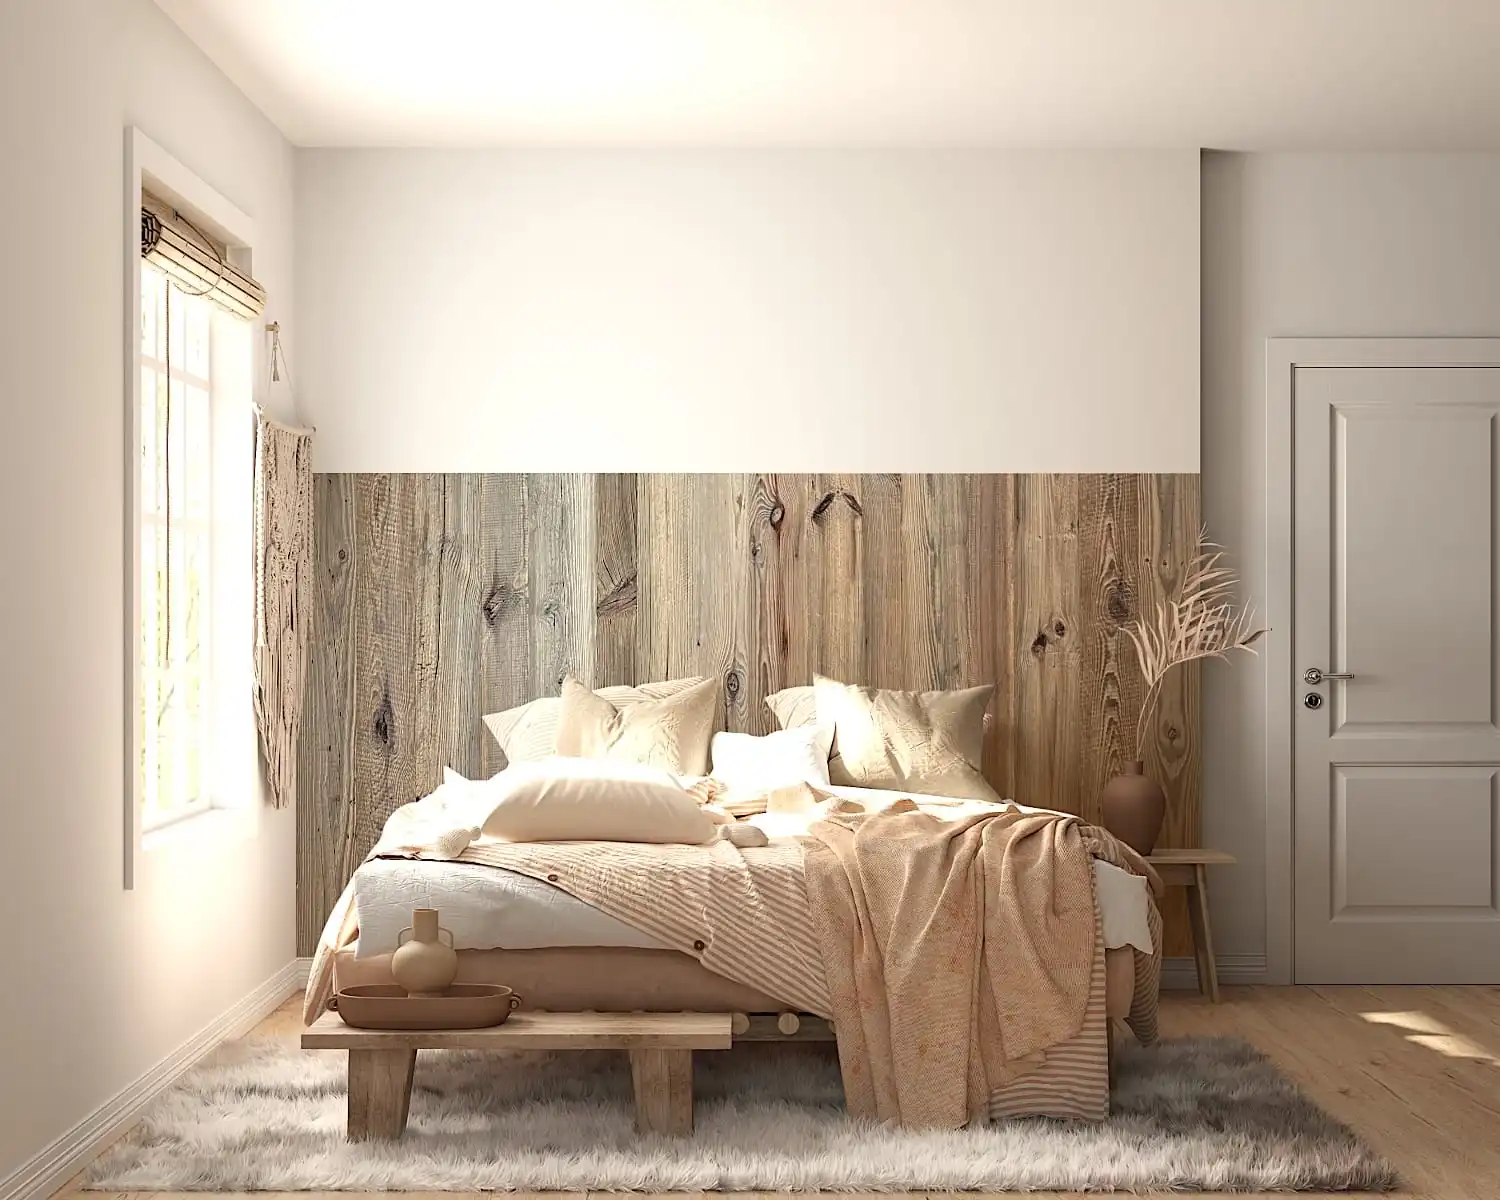 Une chambre lumineuse avec un mur d'accent rustique en bois, un lit avec une literie blanche et un jeté orange, un petit banc au pied, un tapis moelleux et une seule fenêtre laissant entrer la lumière du soleil.